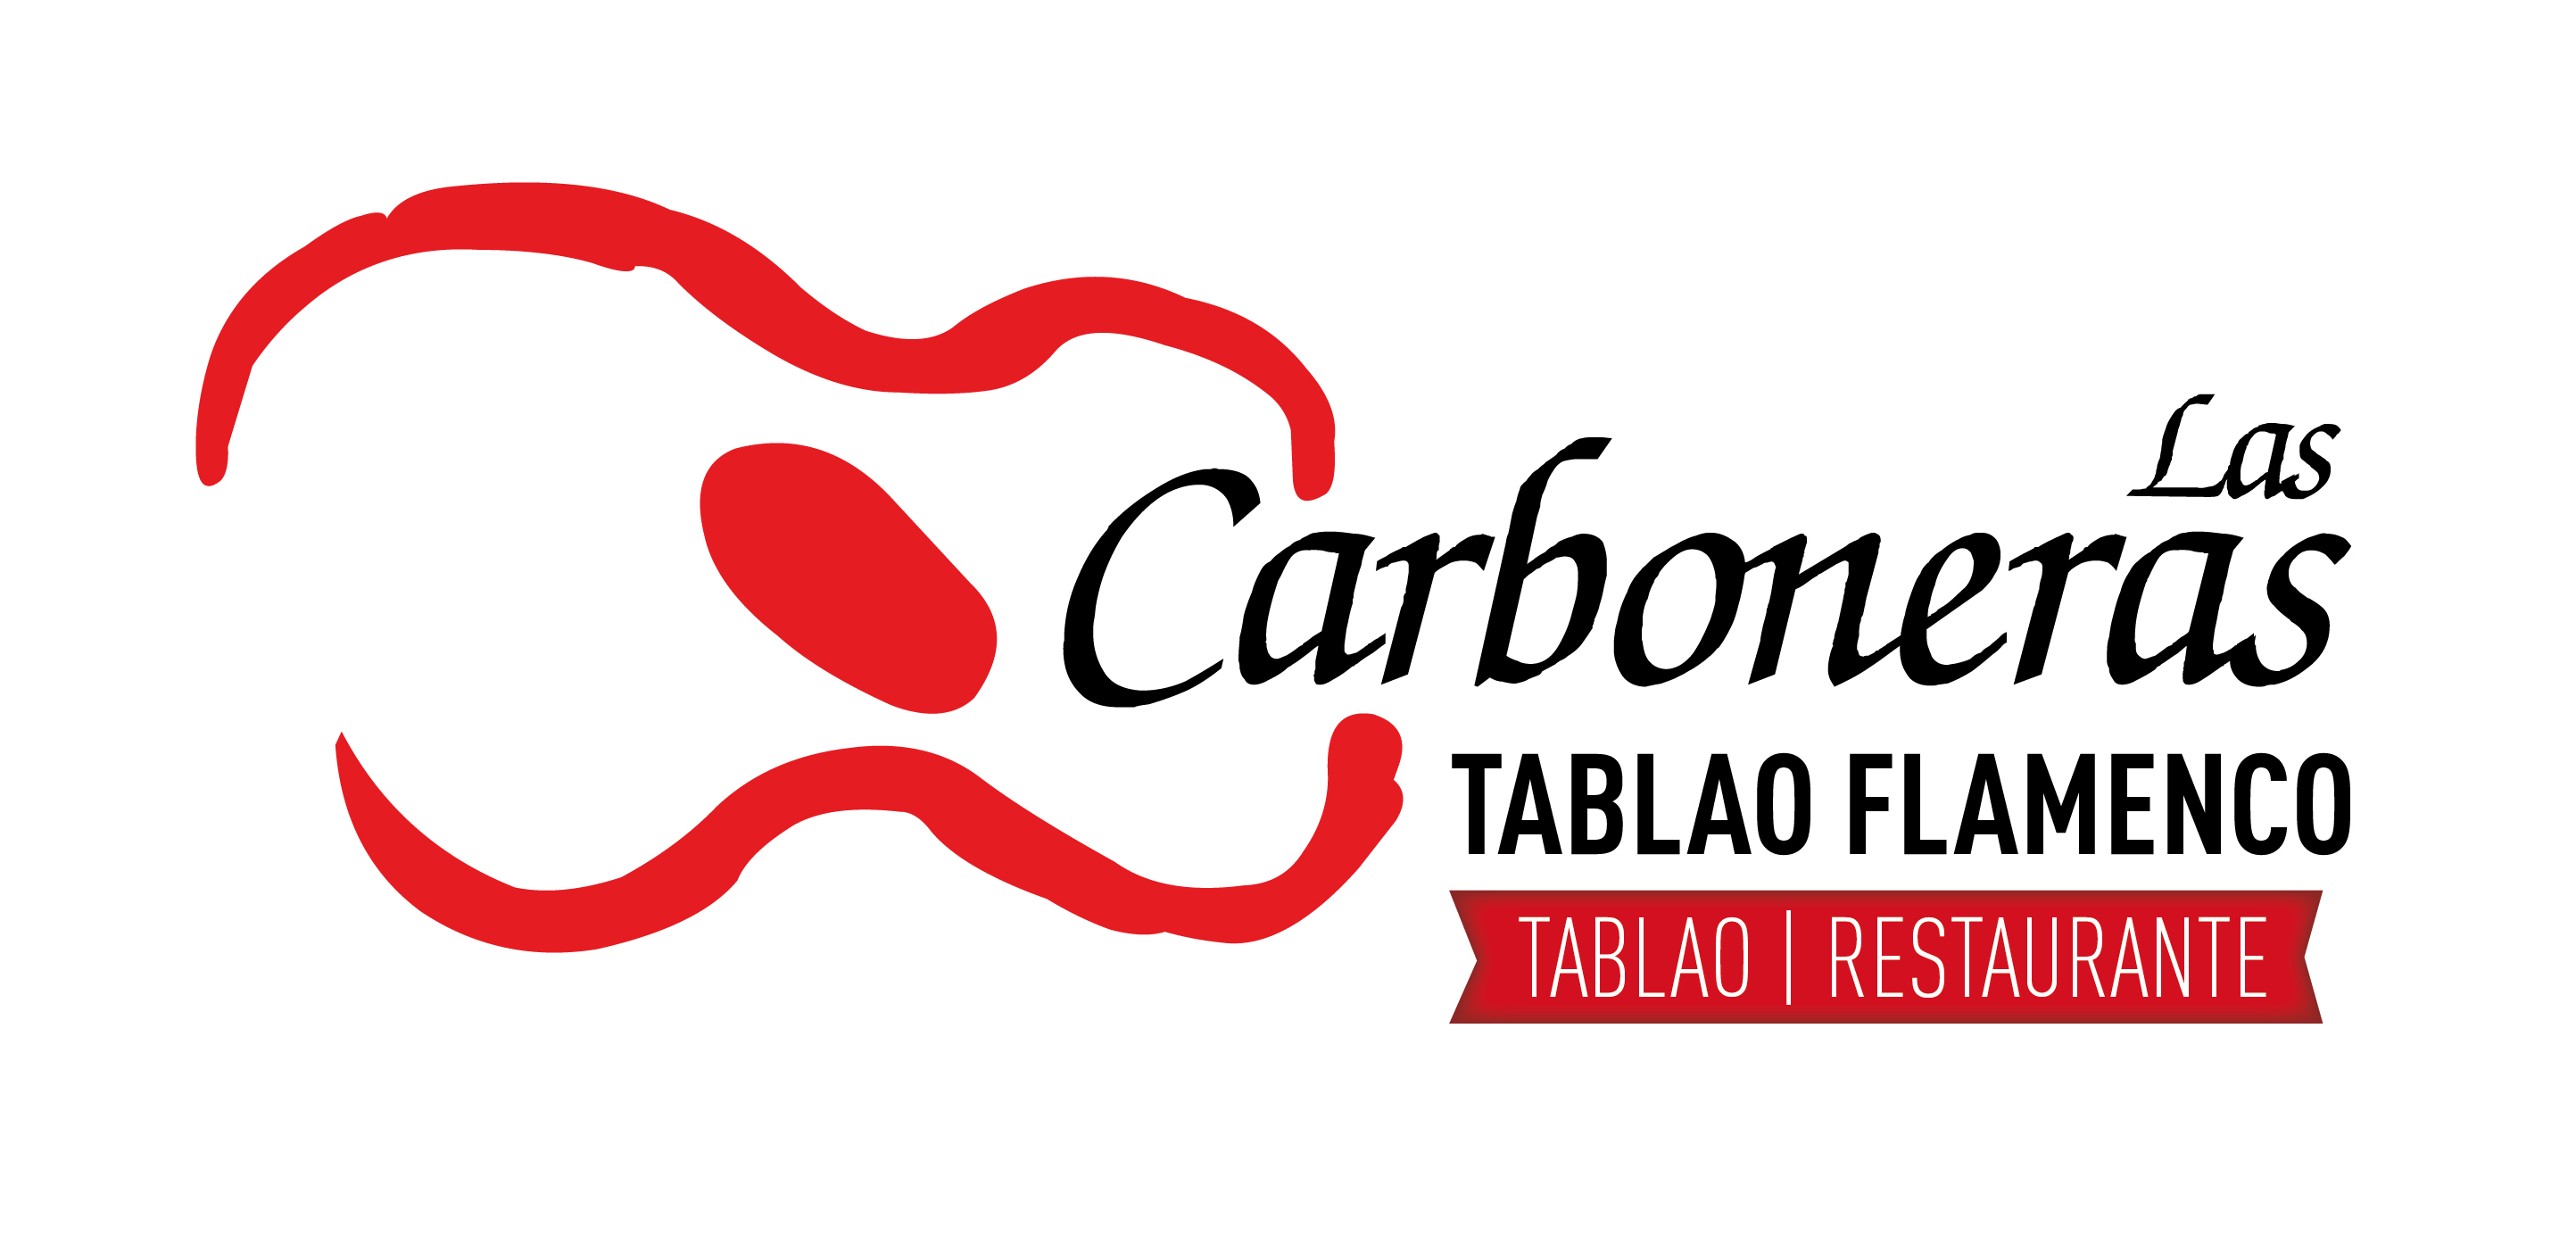 Las Carboneras Tablao Flamenco – Descuentos REAJ